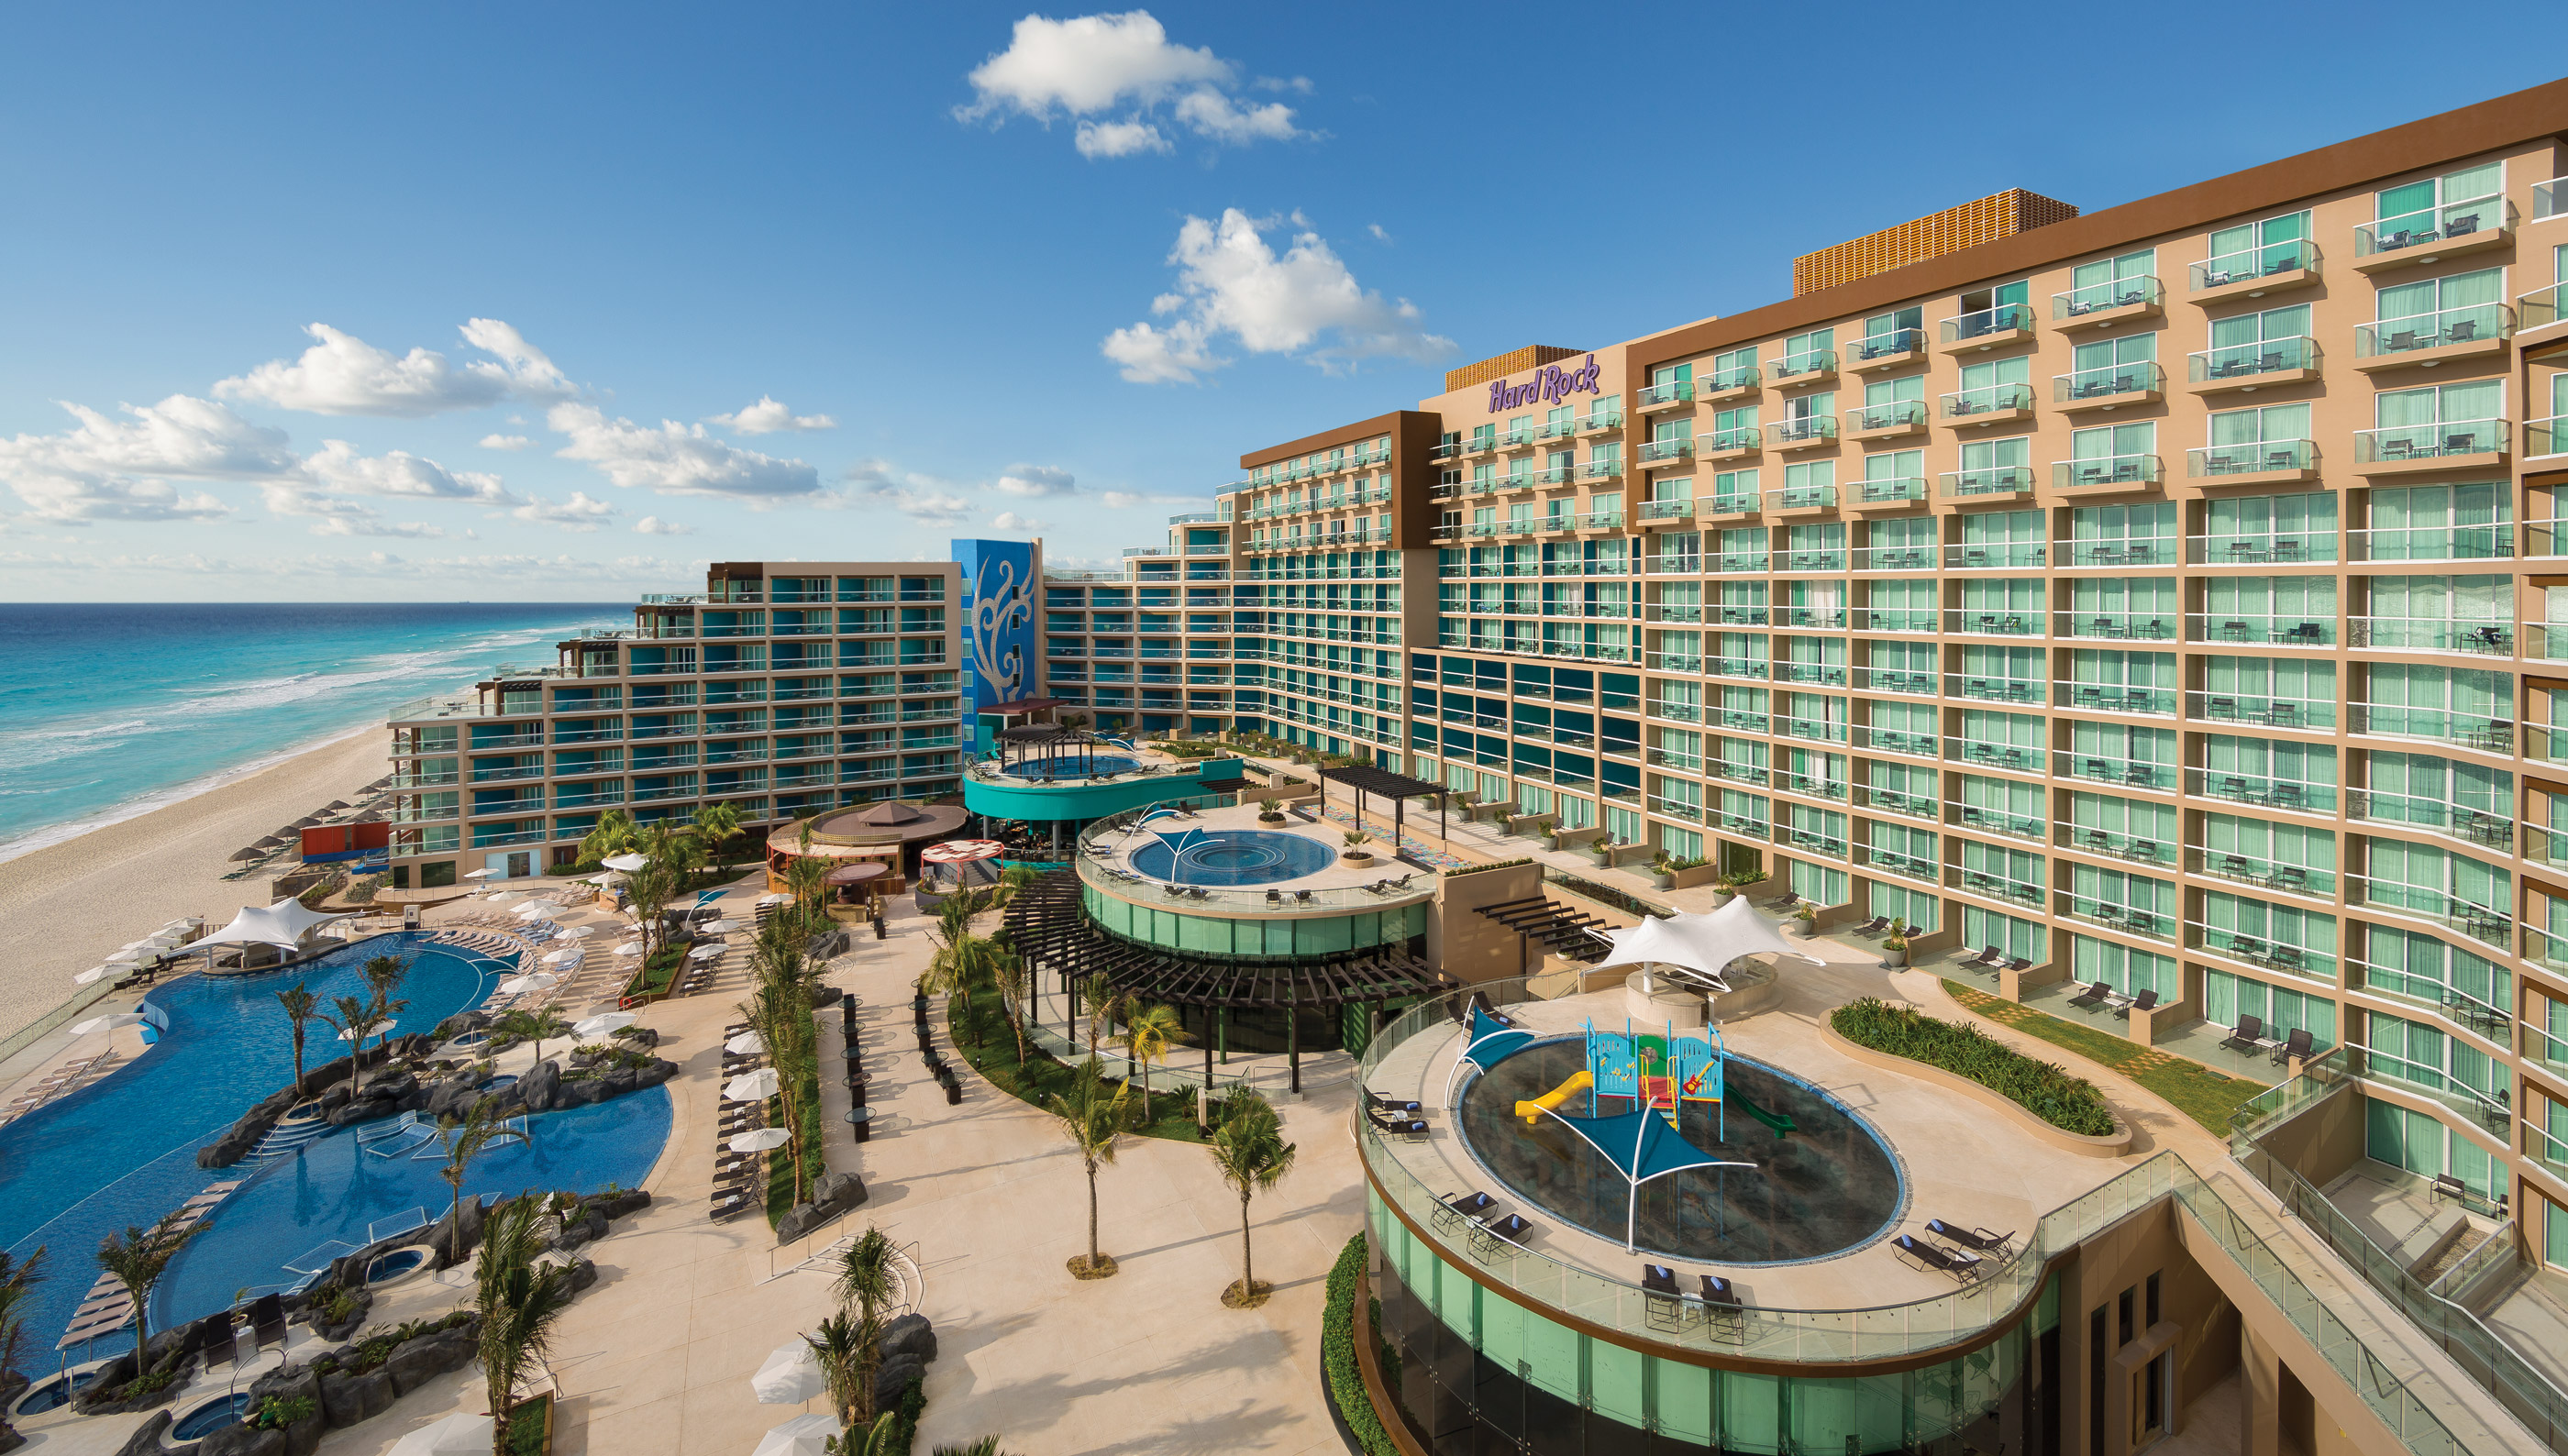 Hard Rock Hotel Cancun – Cancun | Transat